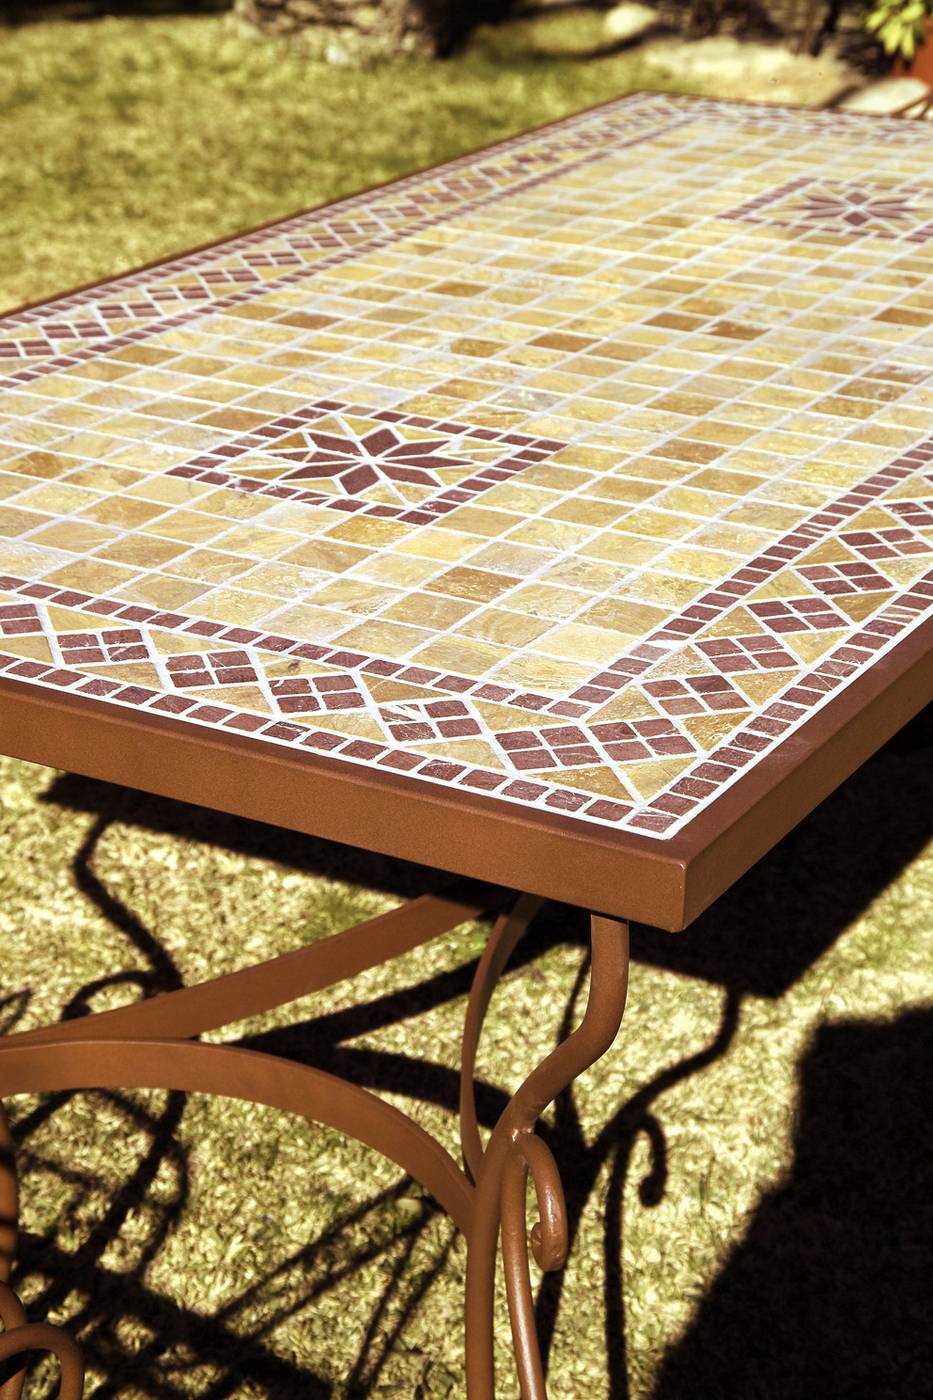 Mesa forja Marbella - Mesa cuadrada o rectangular de forja con tapa de mosaico o cristal, disponible en varias medidas y acabados